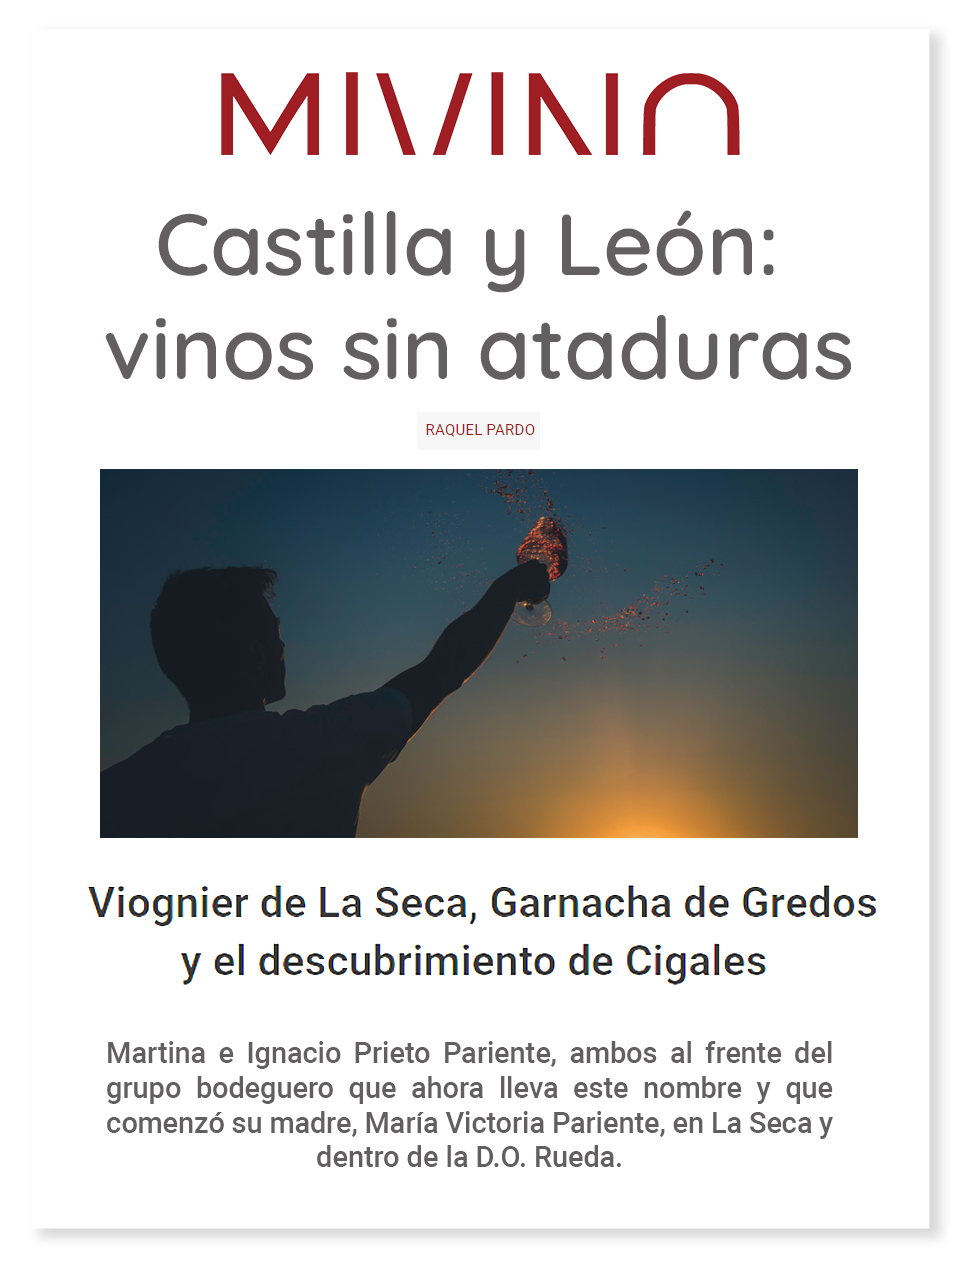 Mi vino Castilla y Leon